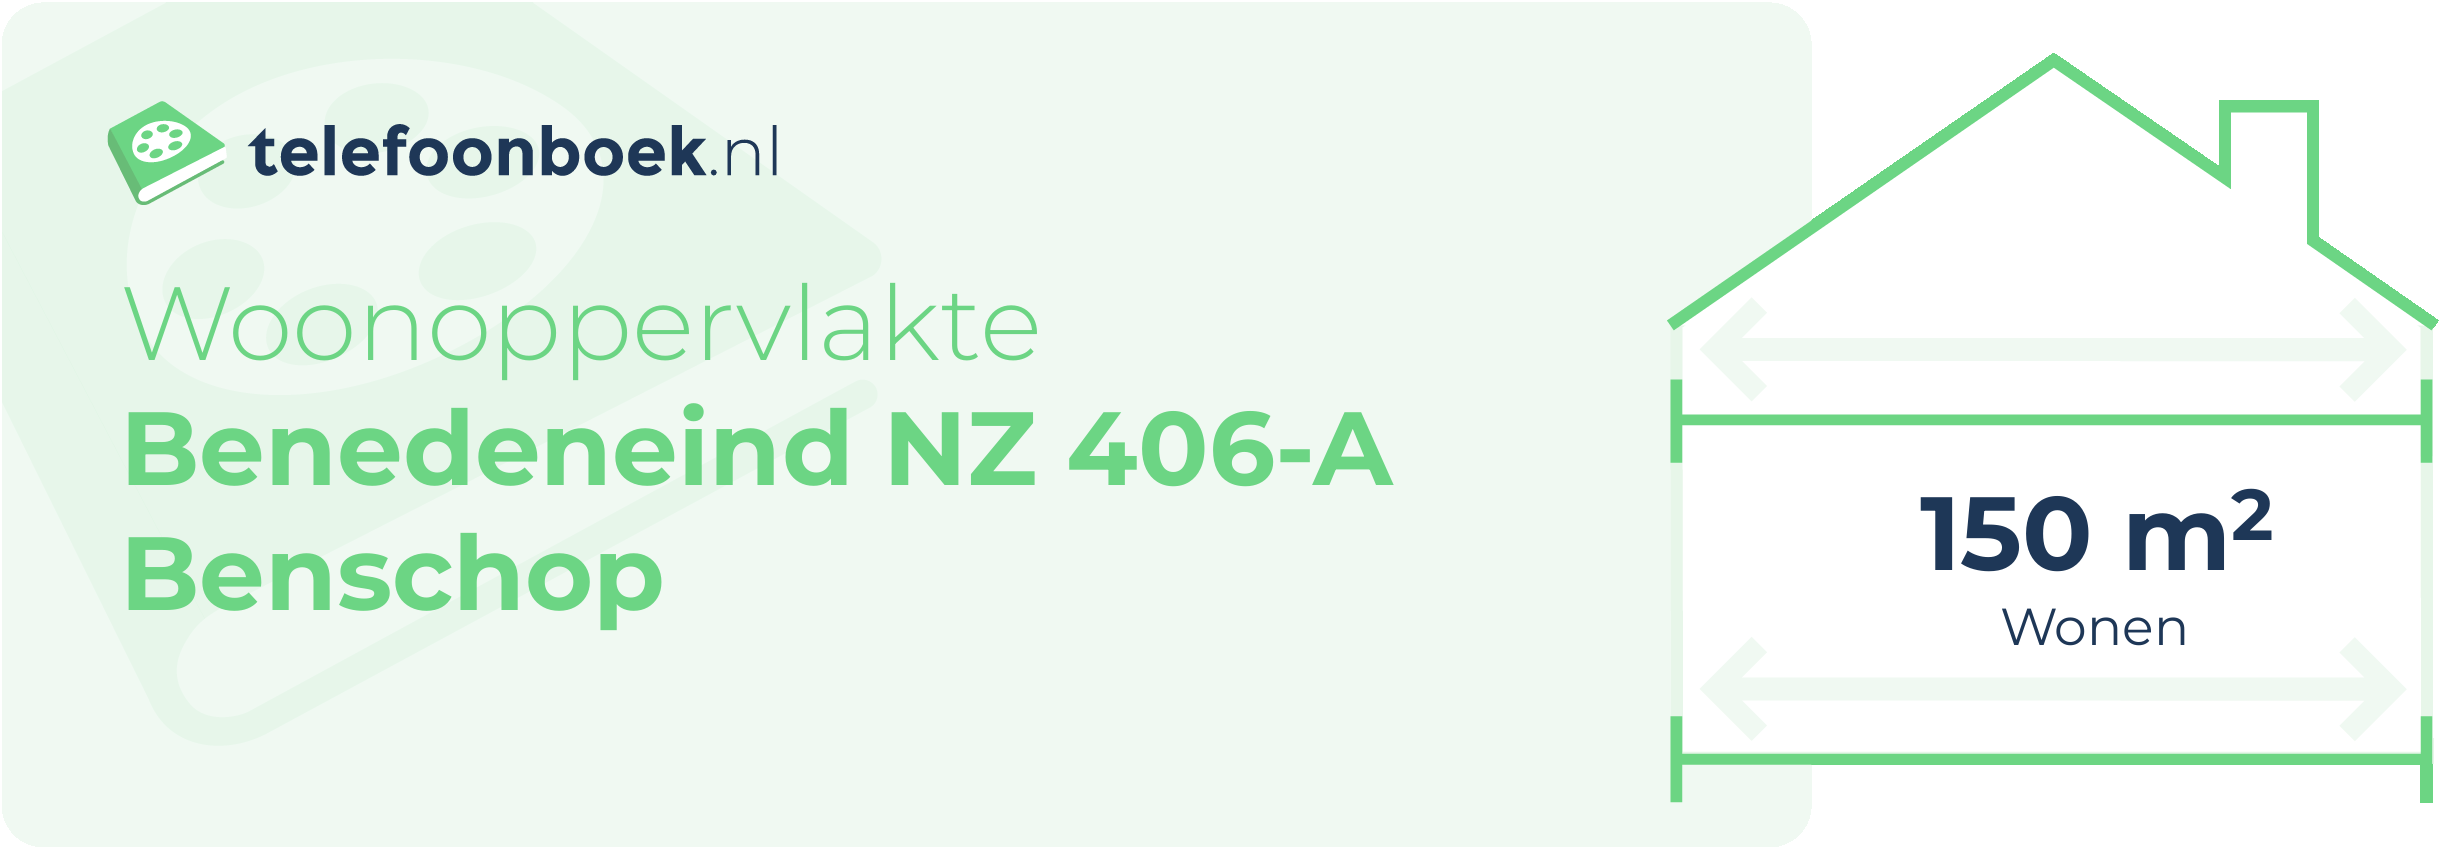 Woonoppervlakte Benedeneind NZ 406-A Benschop